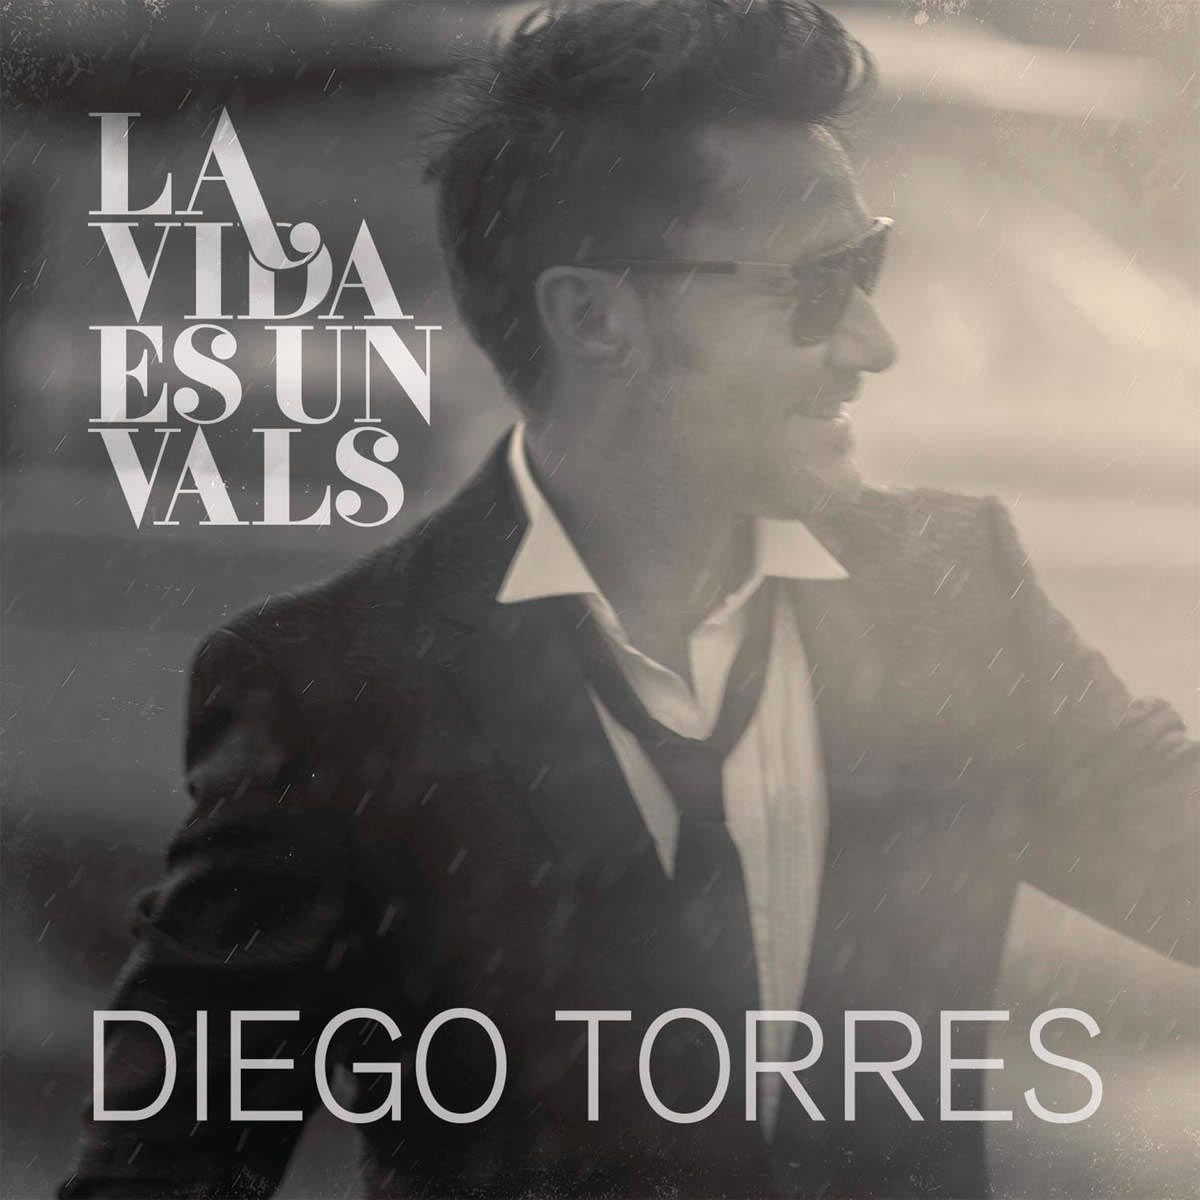 Diego Torres: La vida es un vals - portada